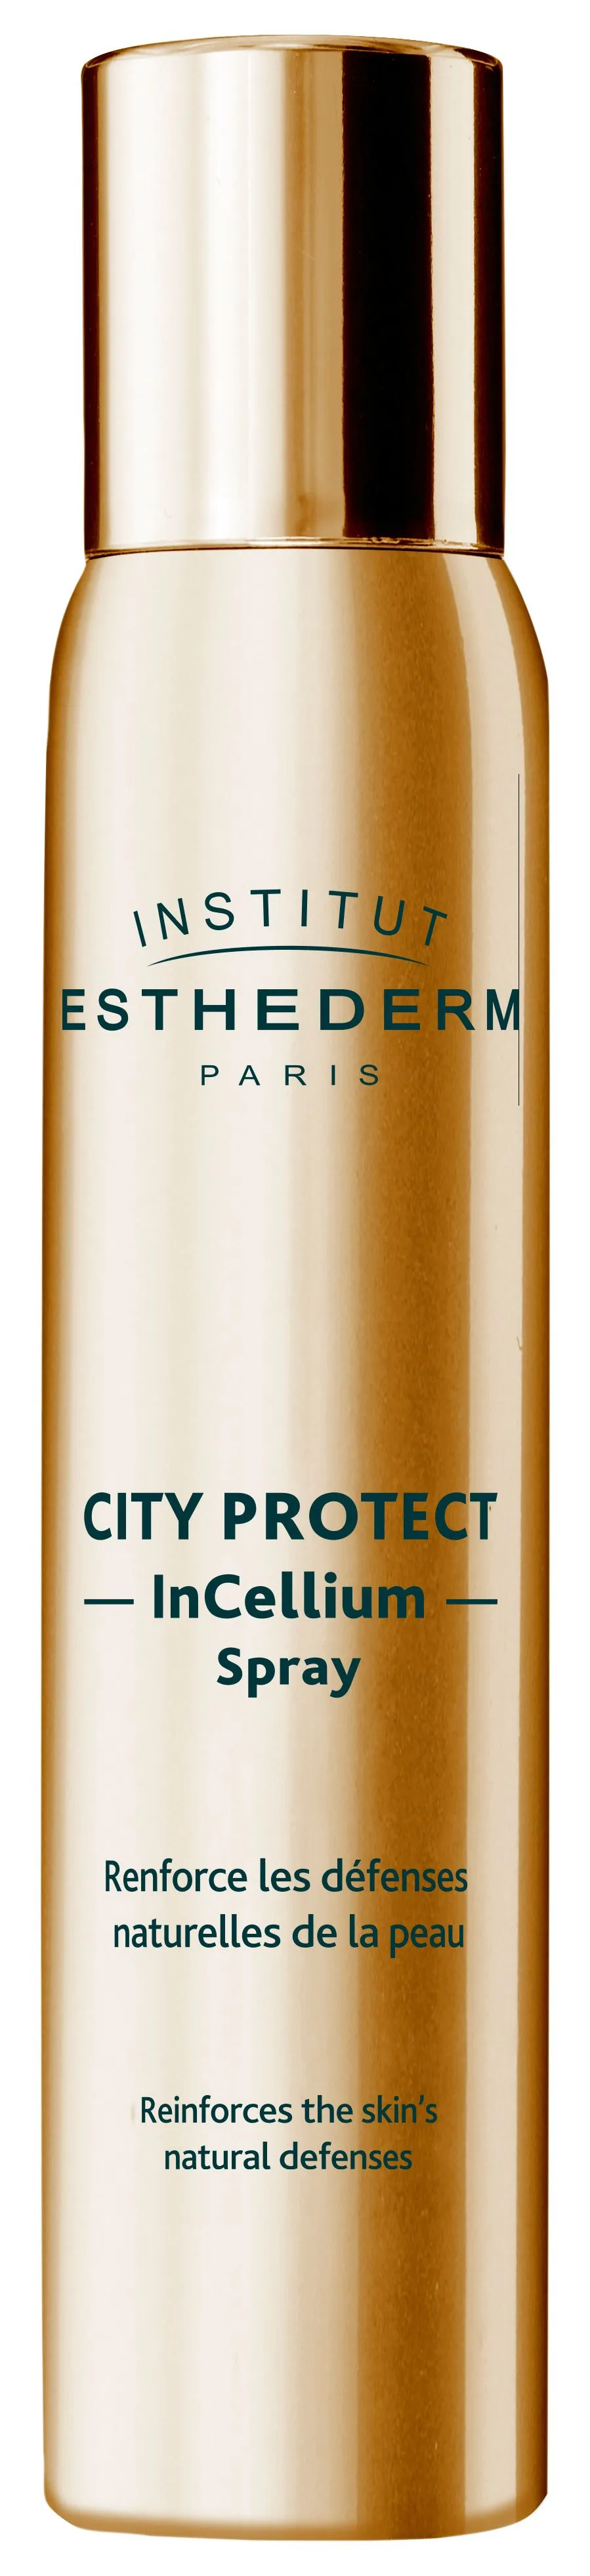 Institut Esthederm City Protect InCellium Spray ochranný sprej 100 ml